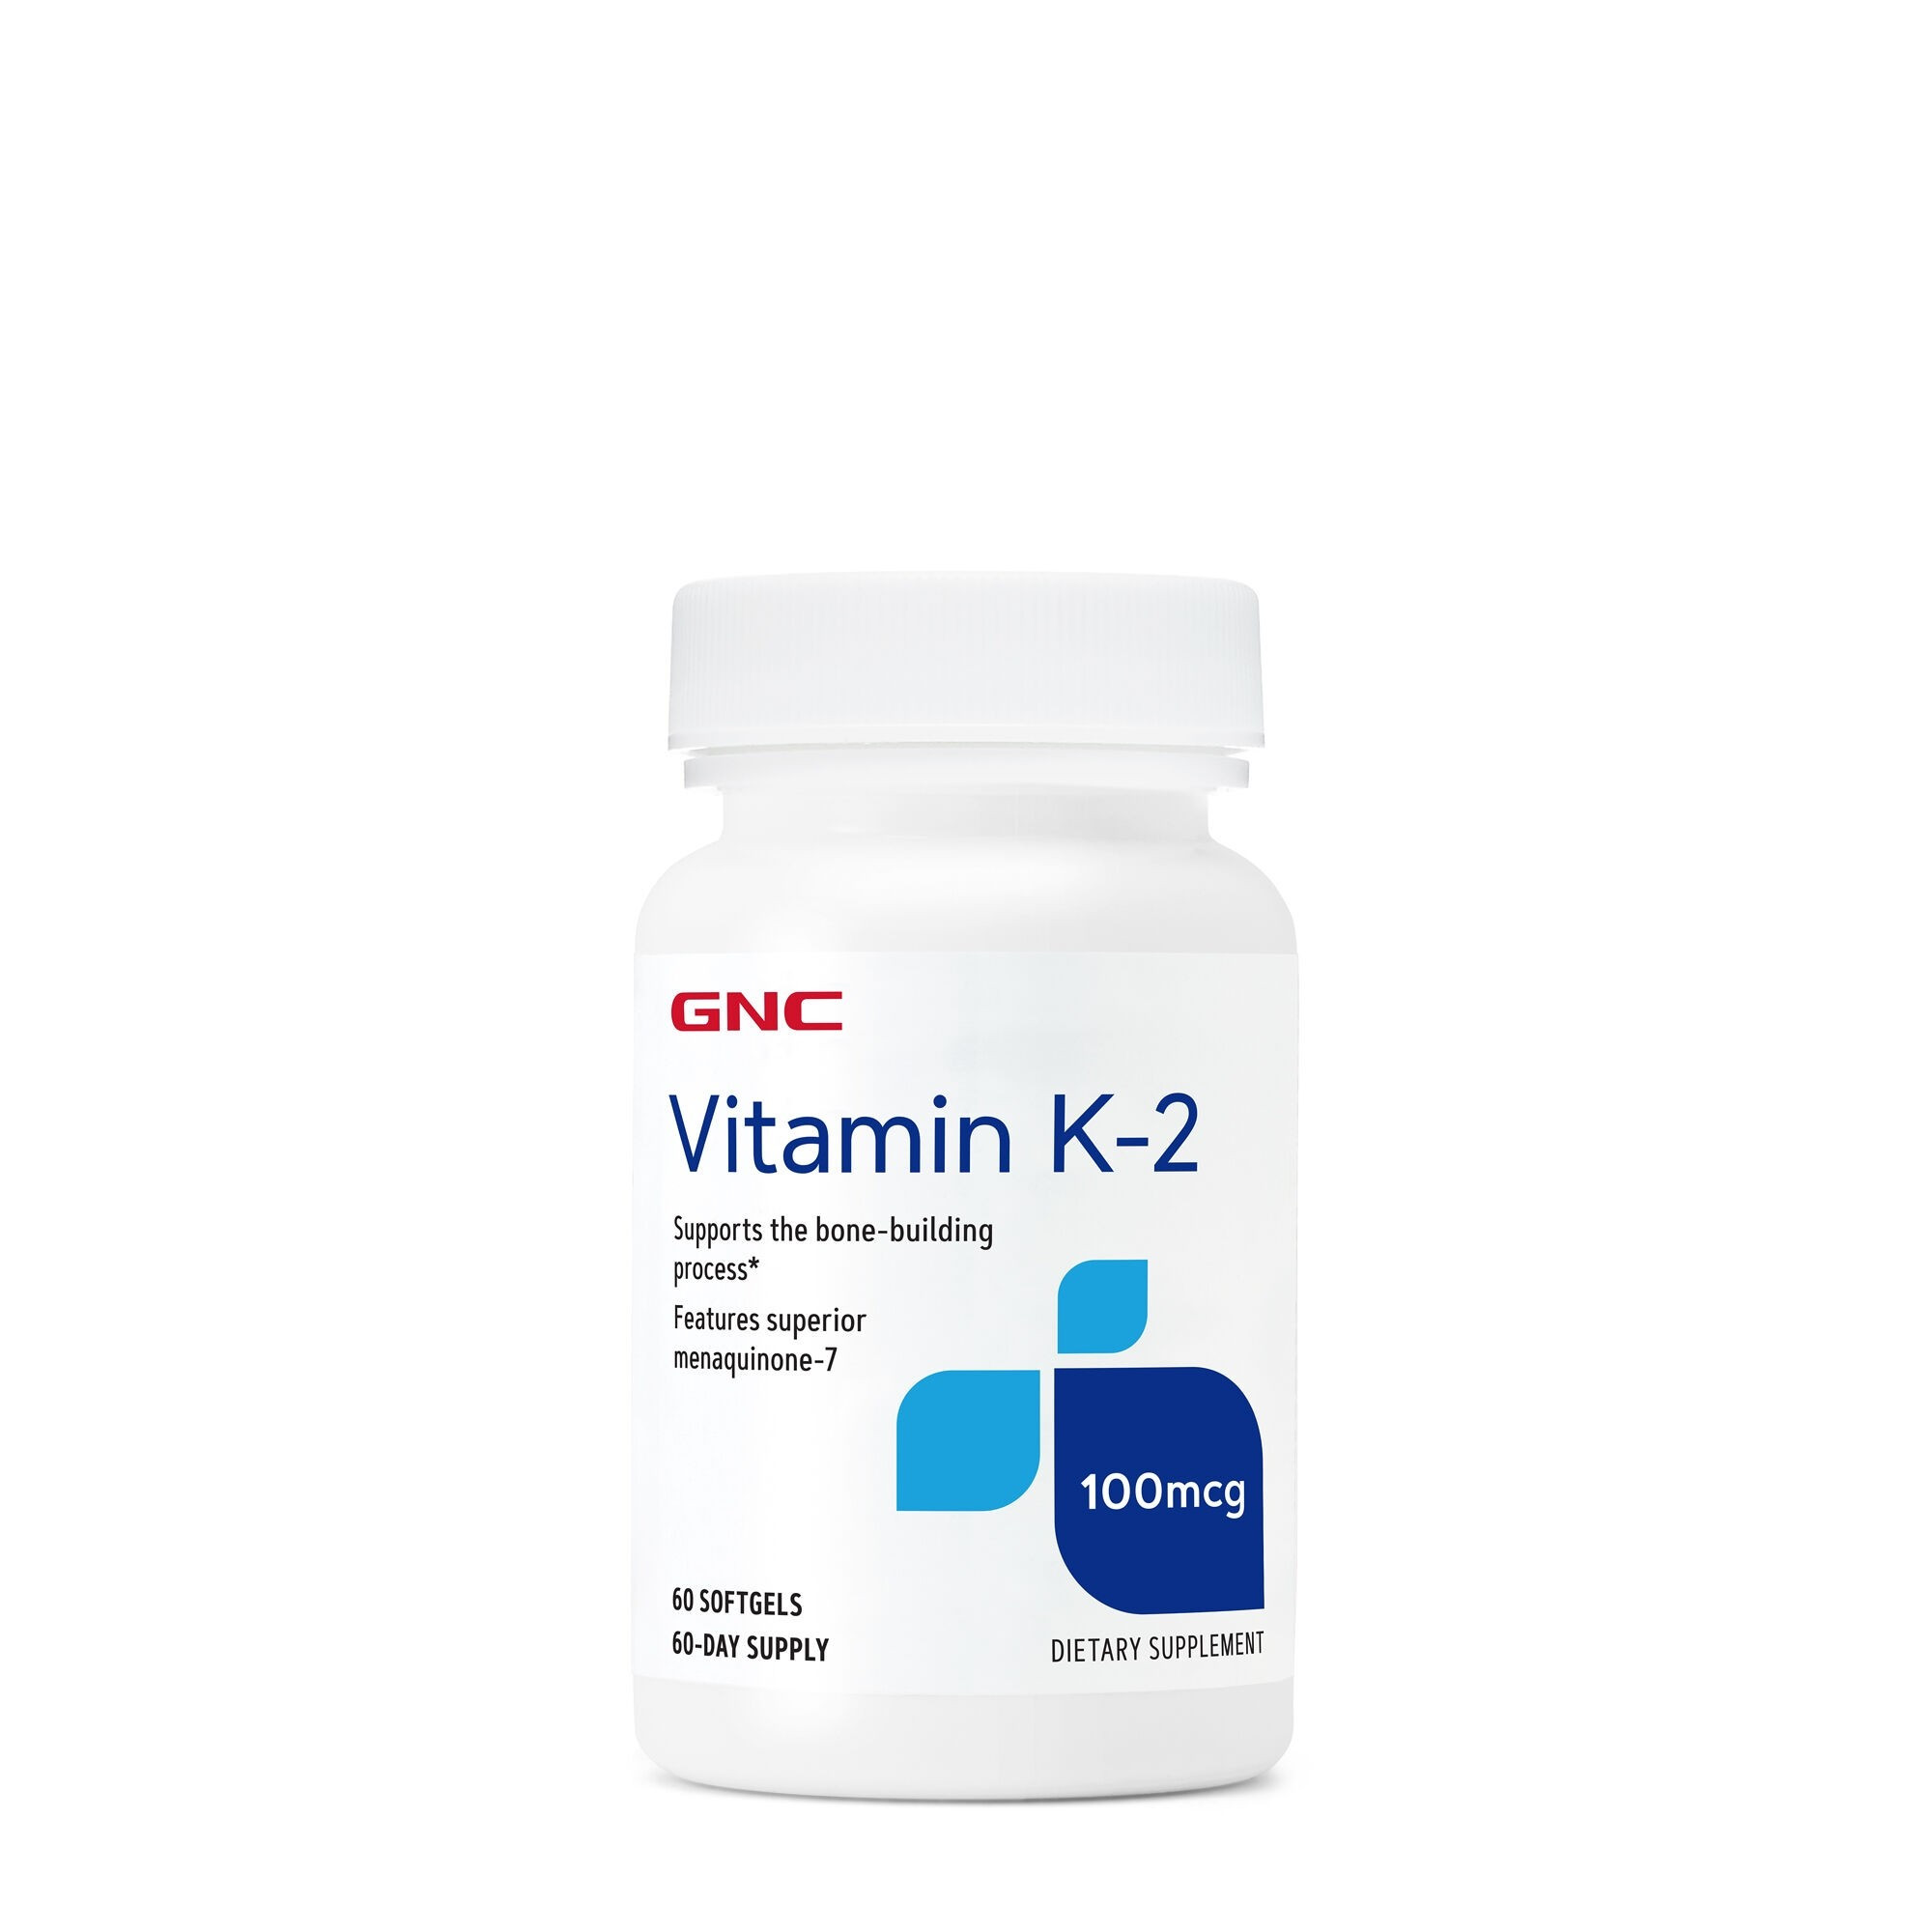 GNC Vitamin K-2 100 mcg, 60 comprimate Menopauza